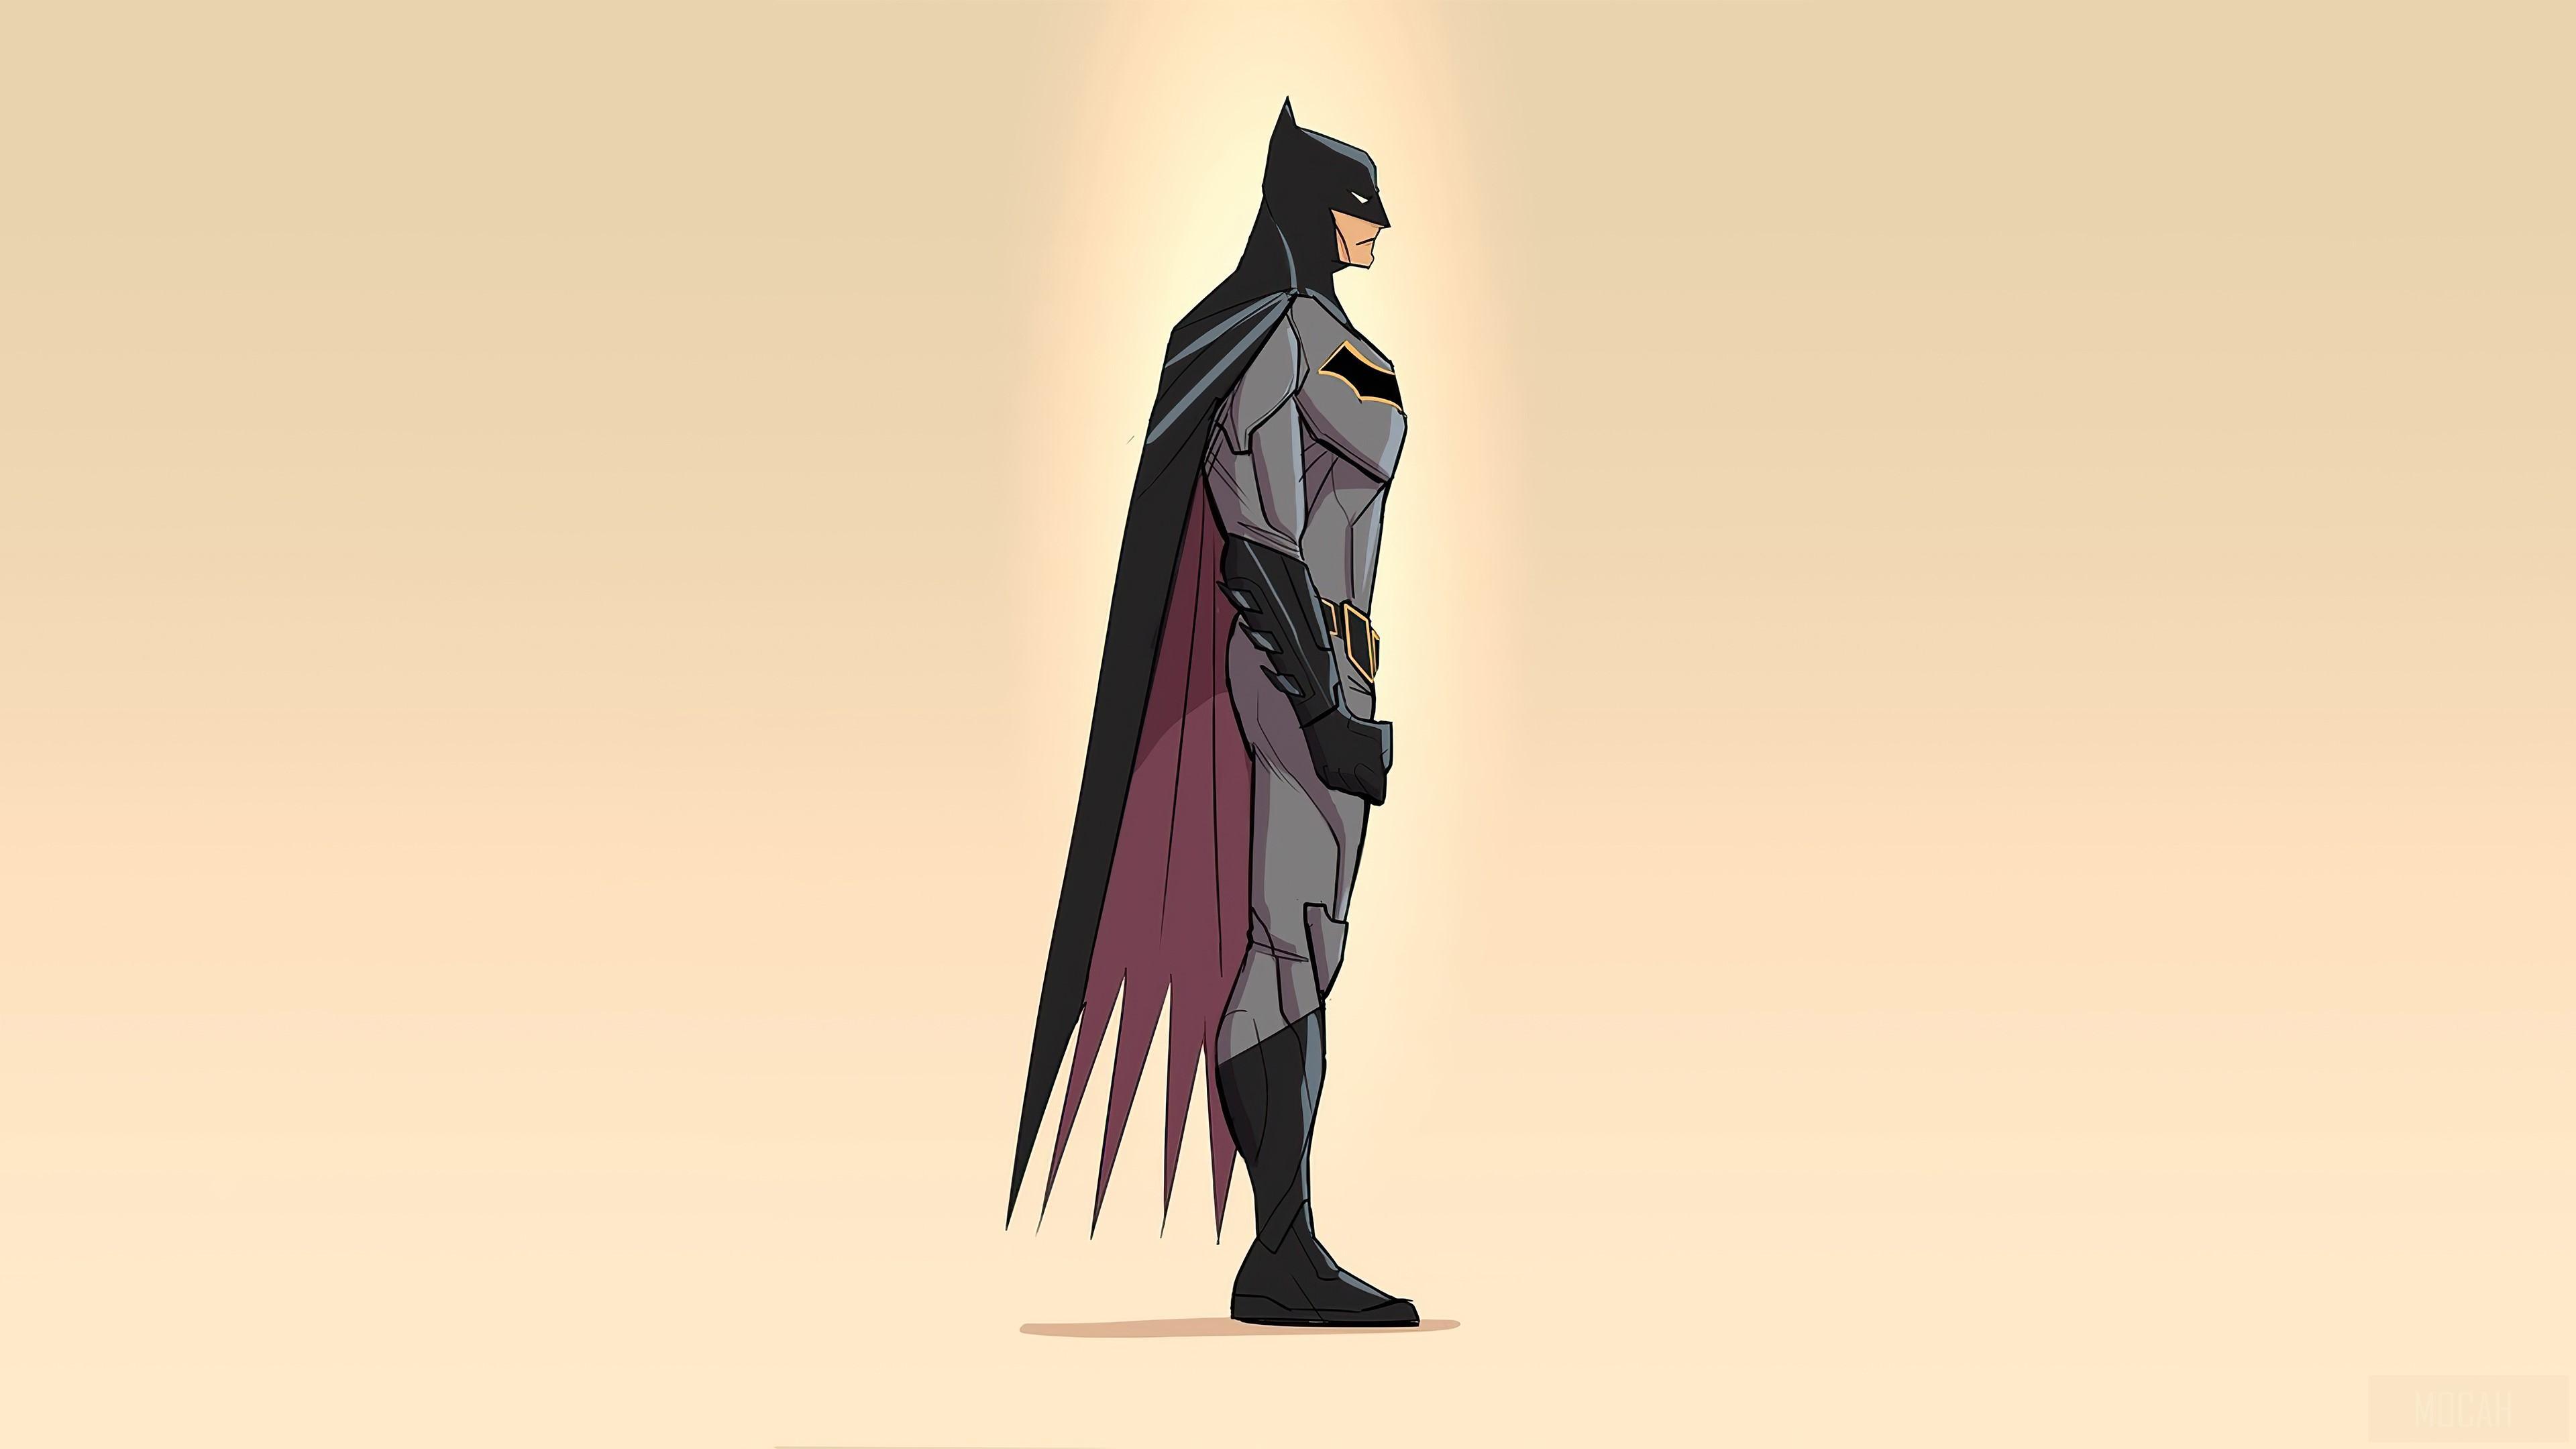 HD wallpaper, 2020 Batman Minimalism 4K